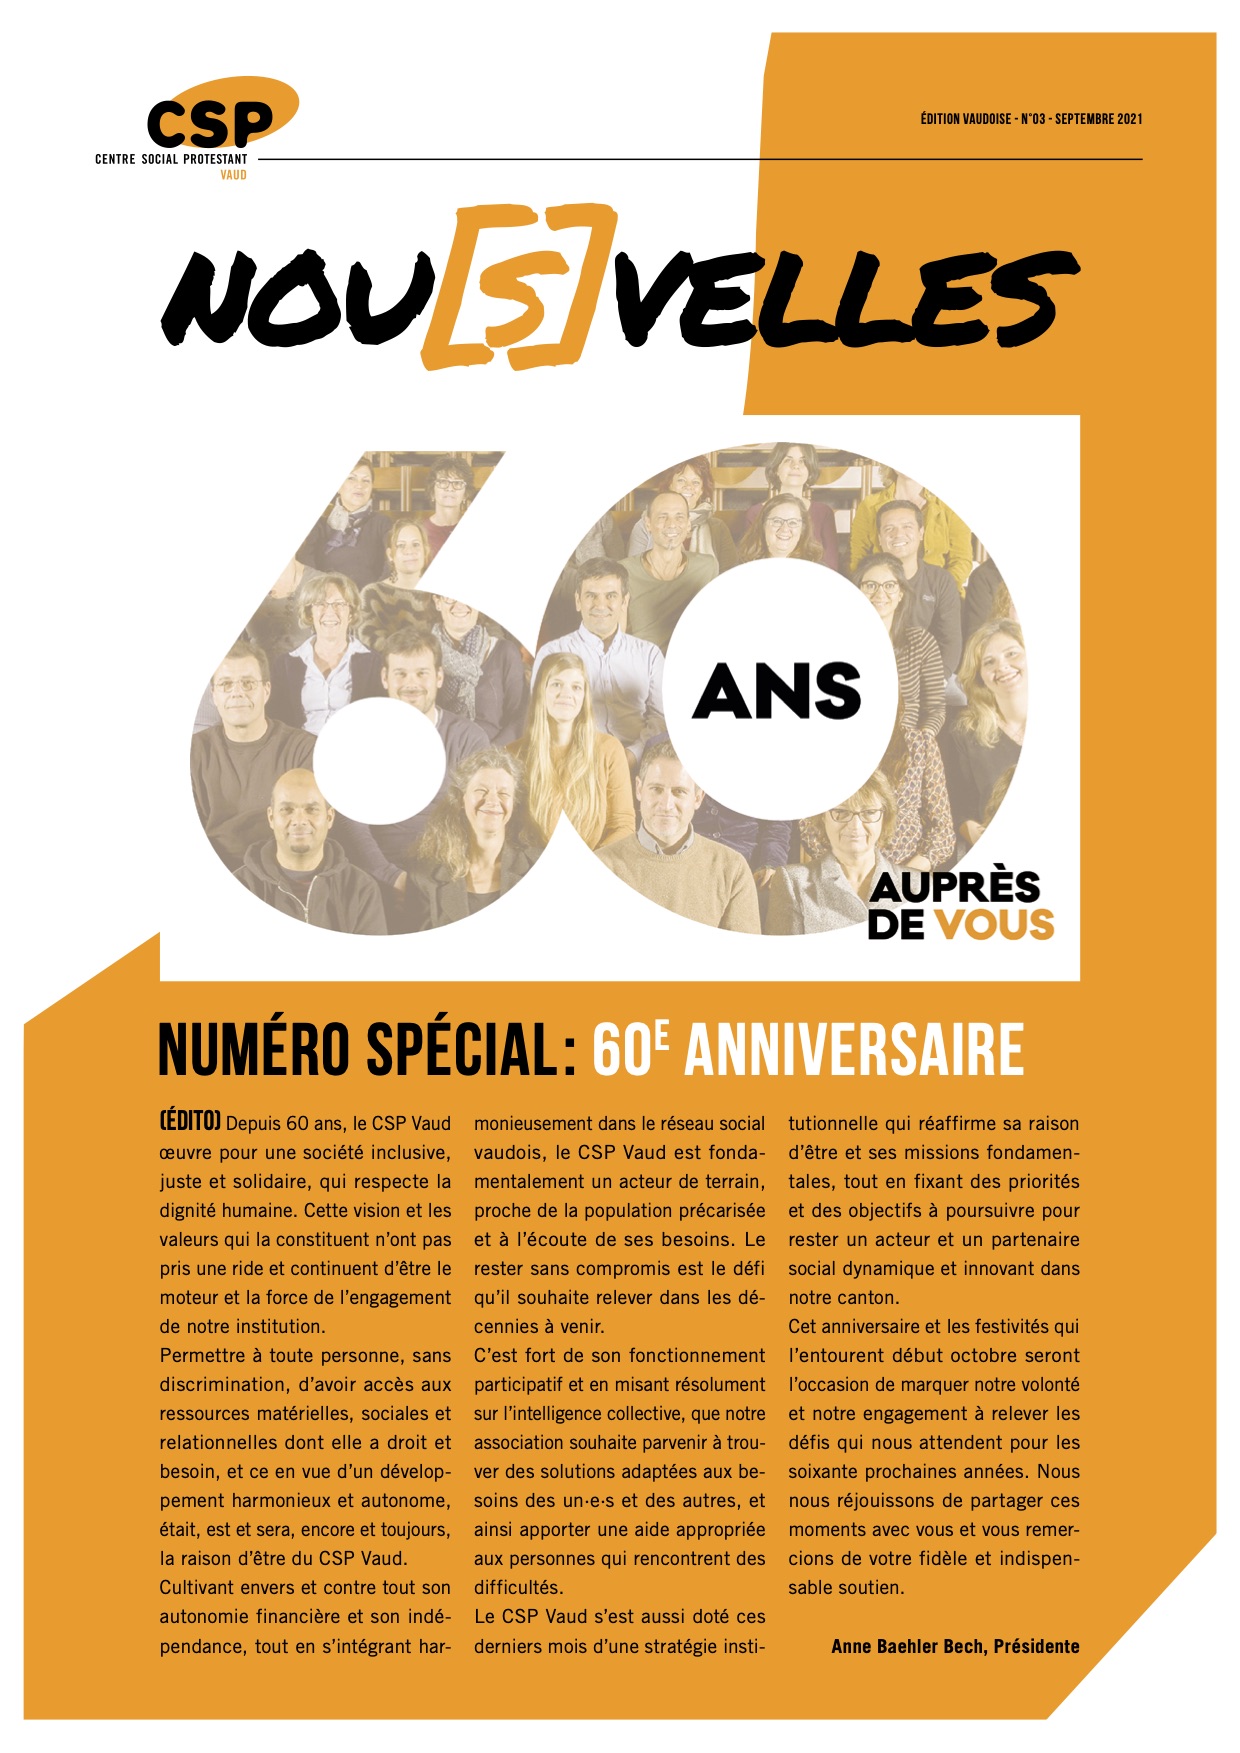 Couverture du journal du CSP Vaud, les Nouvelles, septembre 2021, spécial anniversaire du CSP Vaud